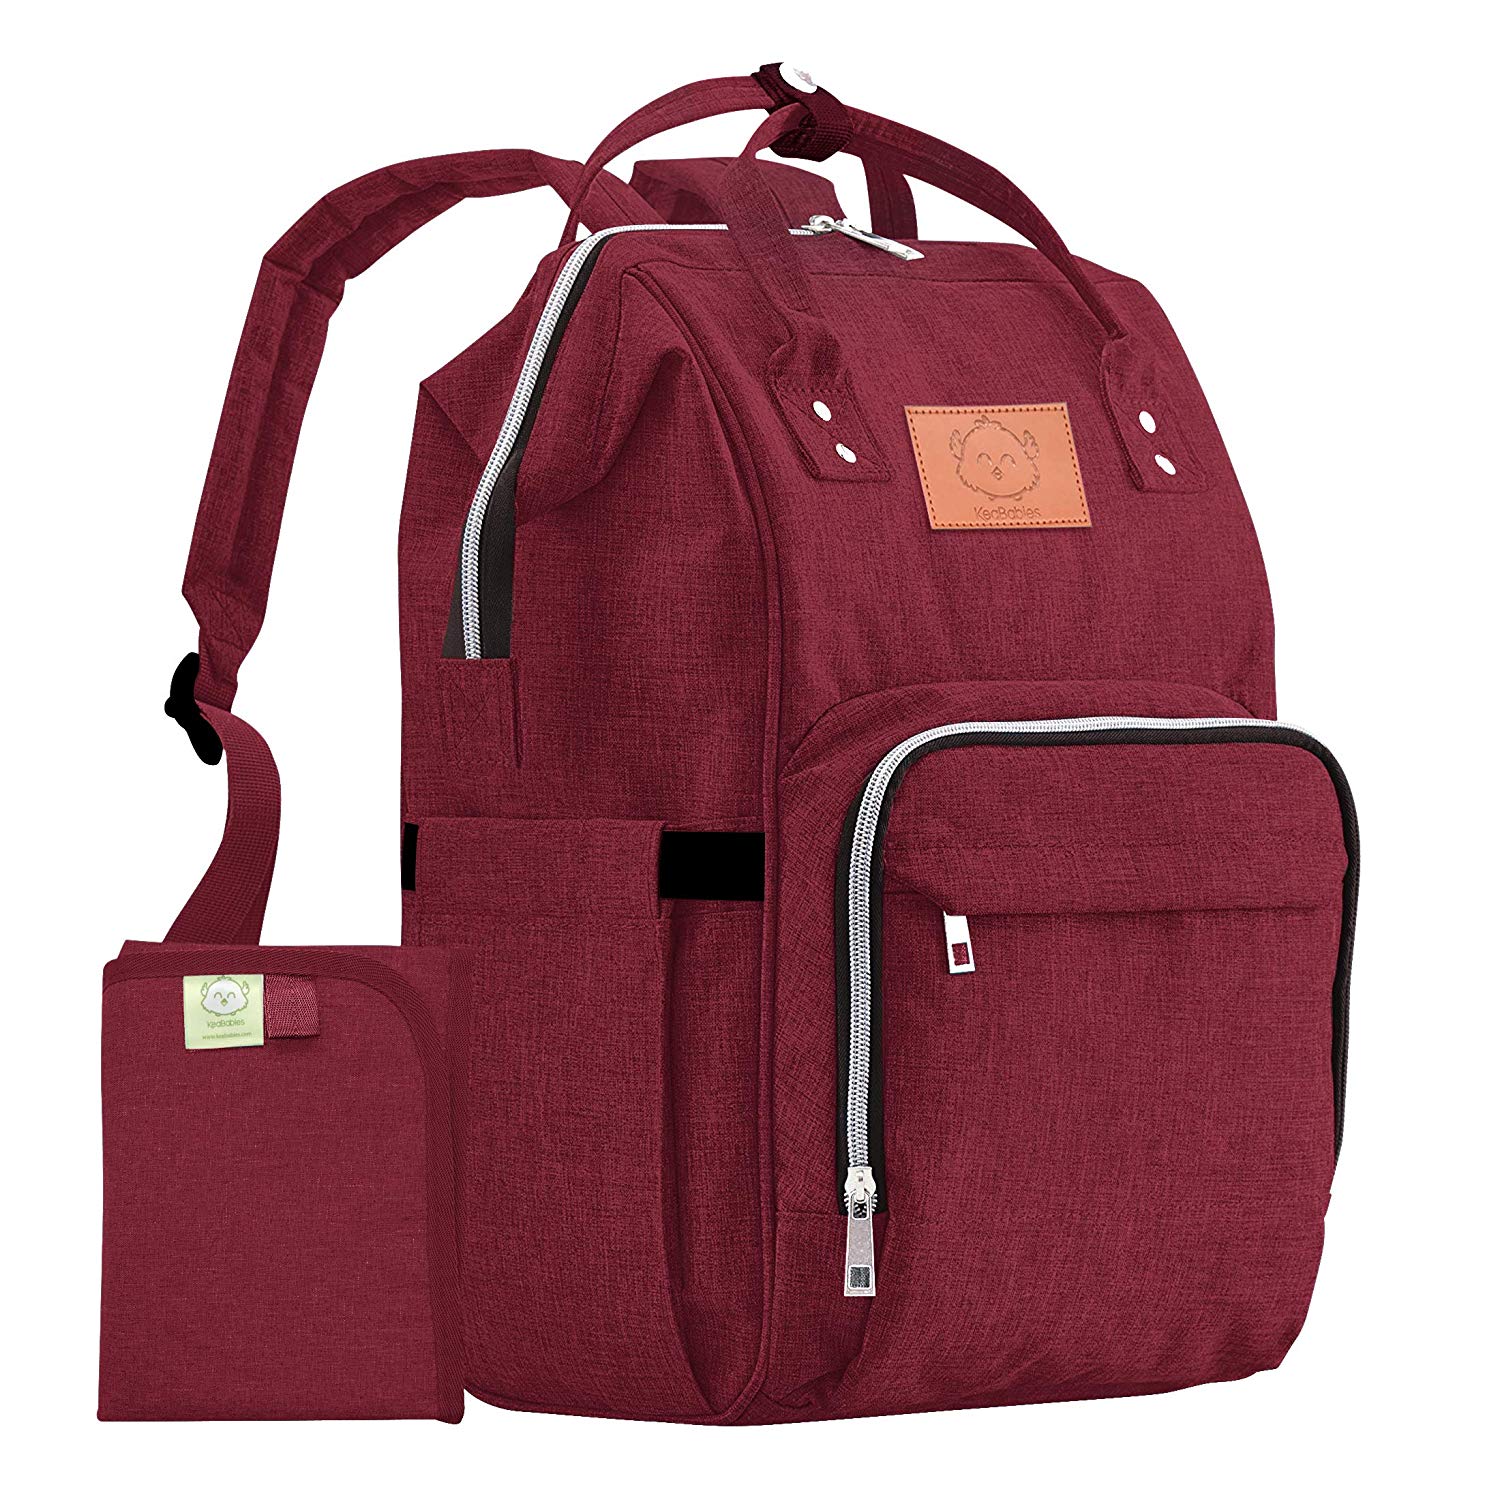 KeaBabies Original Diaper Bag Backpack (Wine Red)